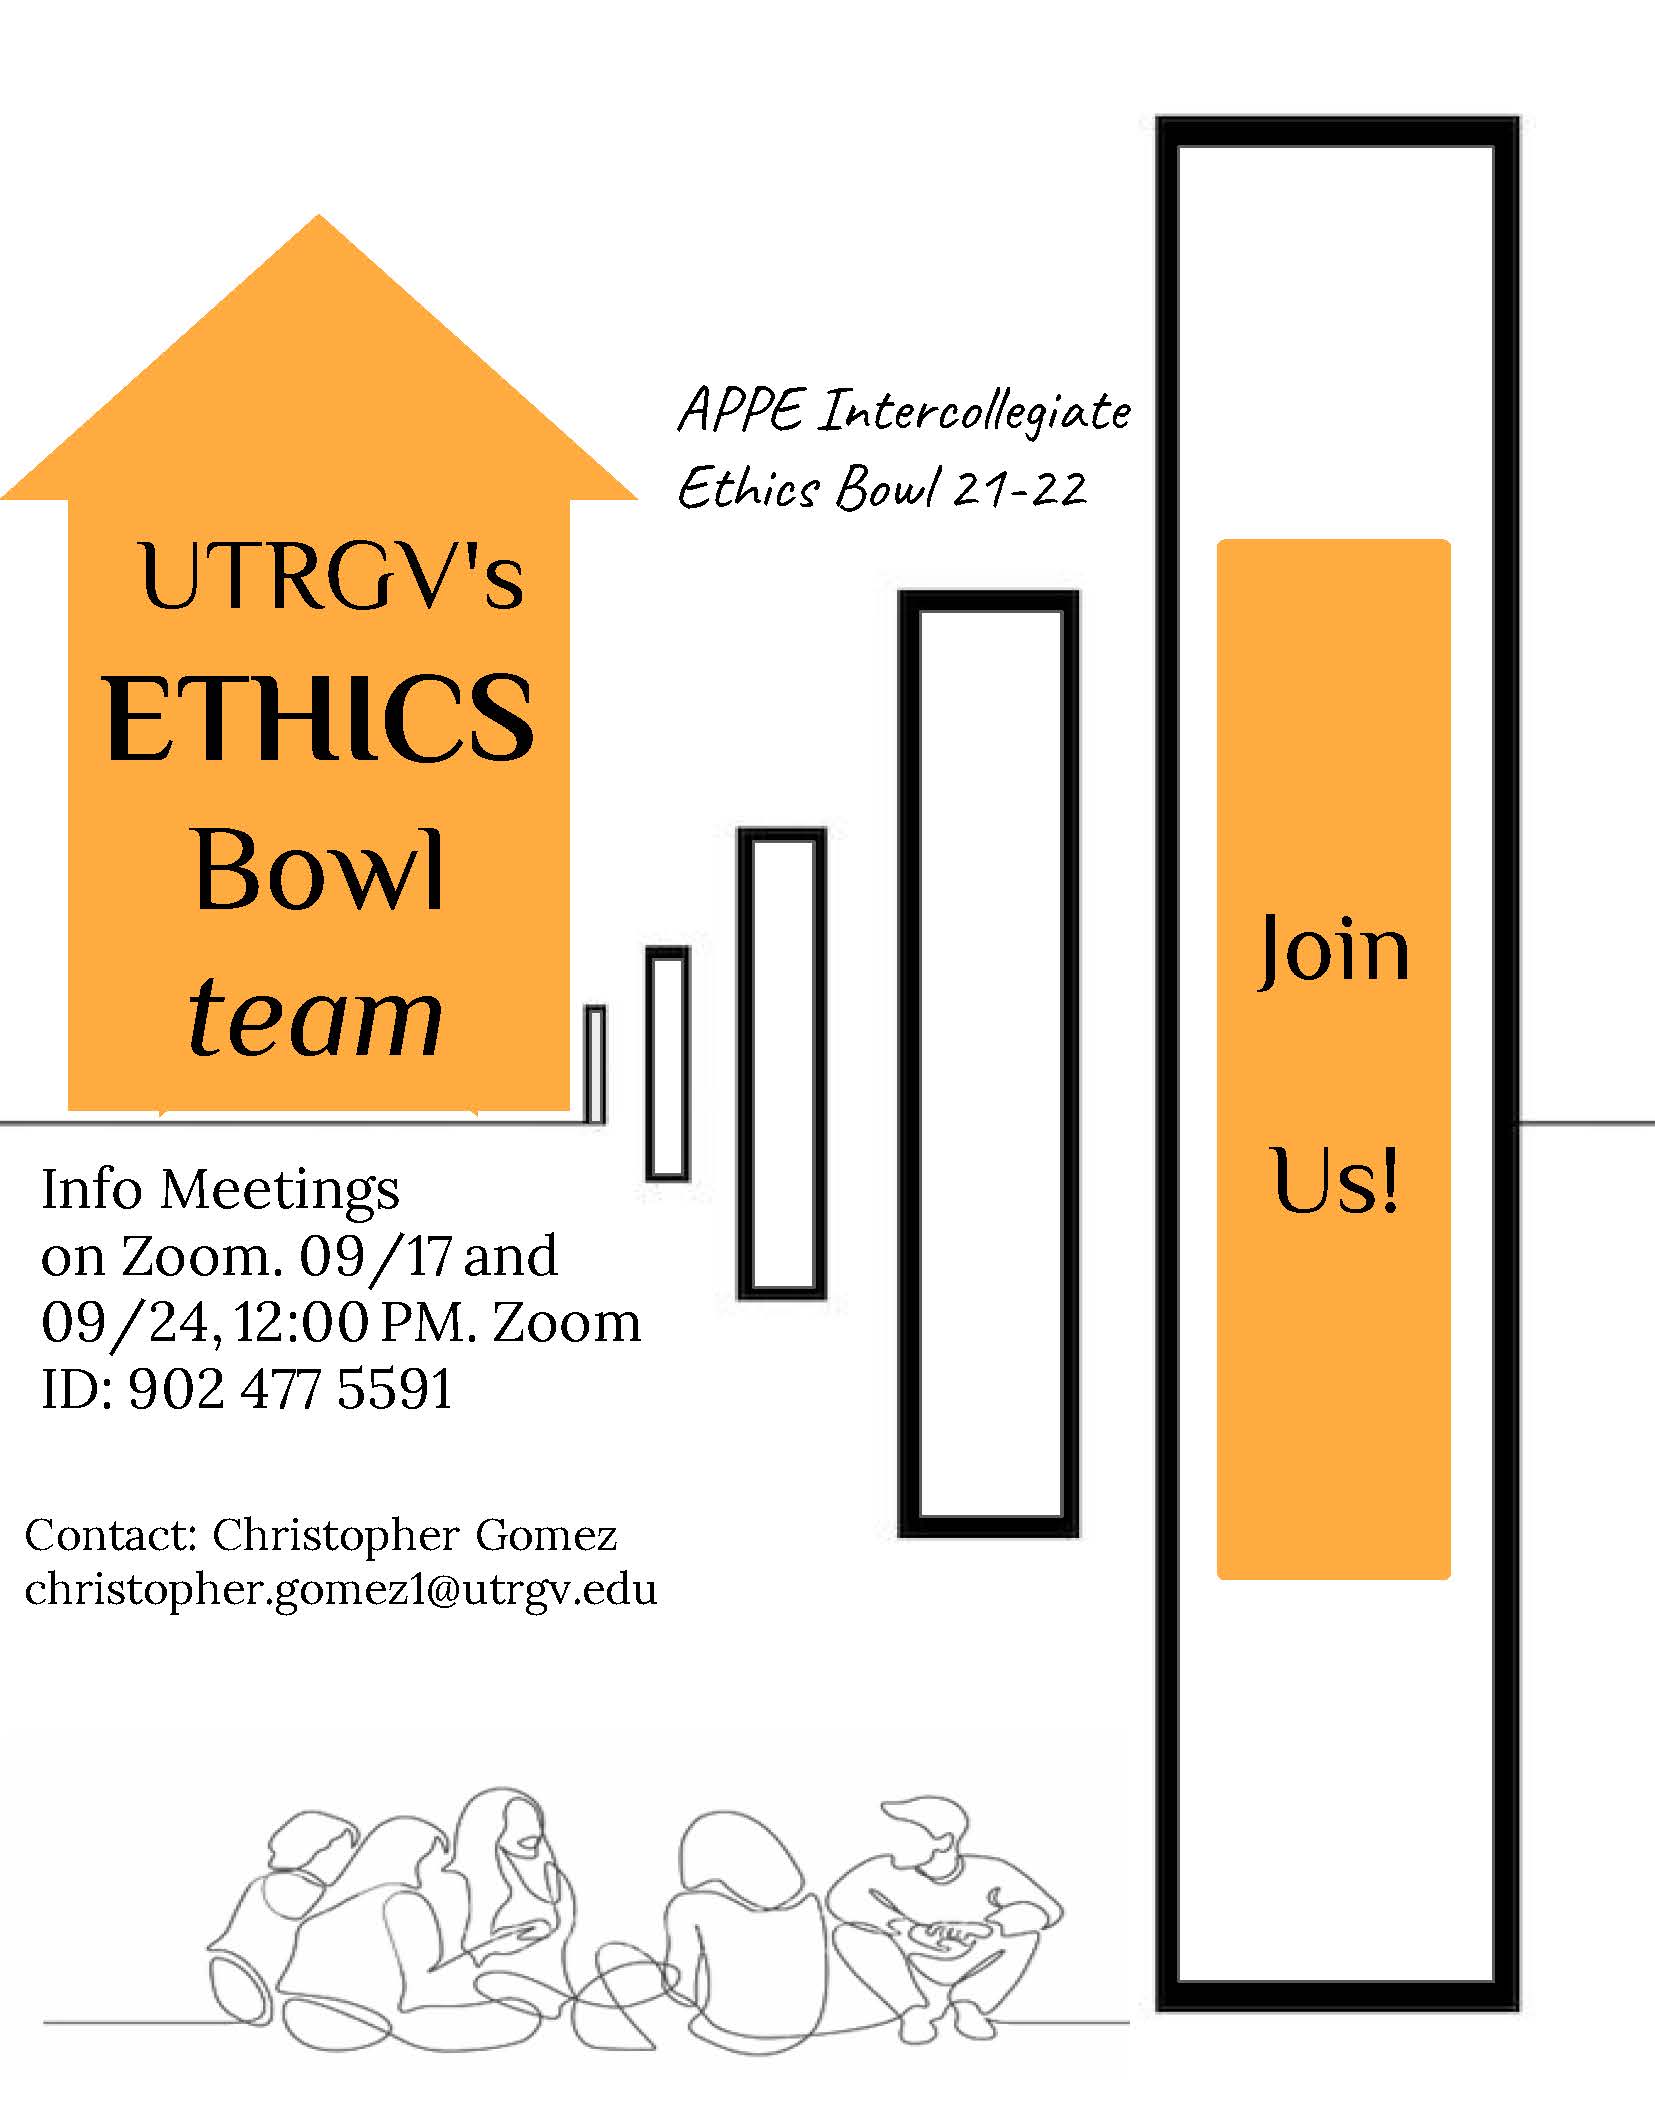 UTRGV's Ethics Bowl team is back!